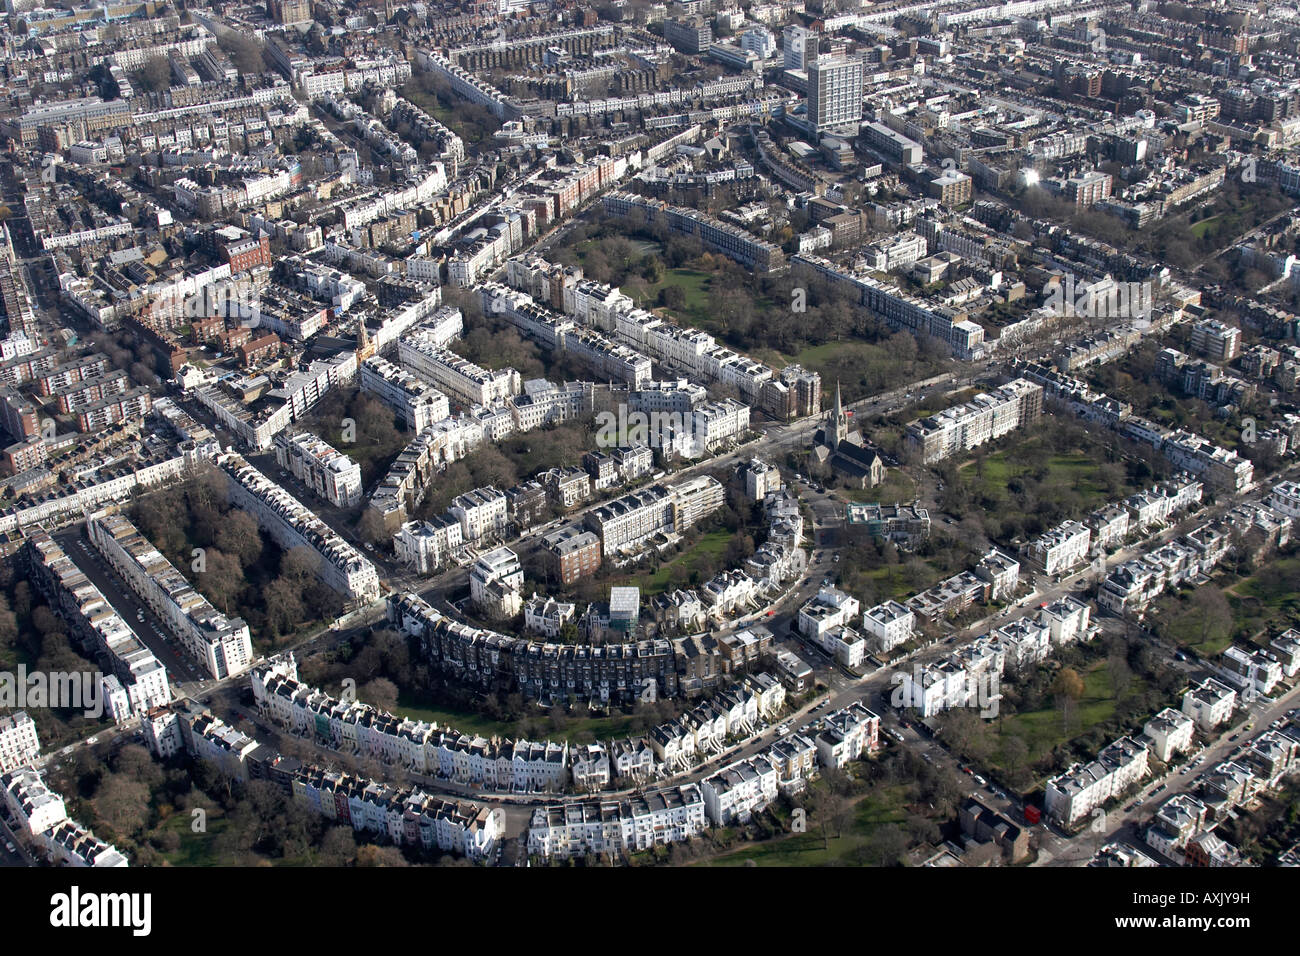 Vue aérienne oblique de haut niveau est de Notting Hill Ladbroke Grove Londres W11 England UK Février 2006 Banque D'Images